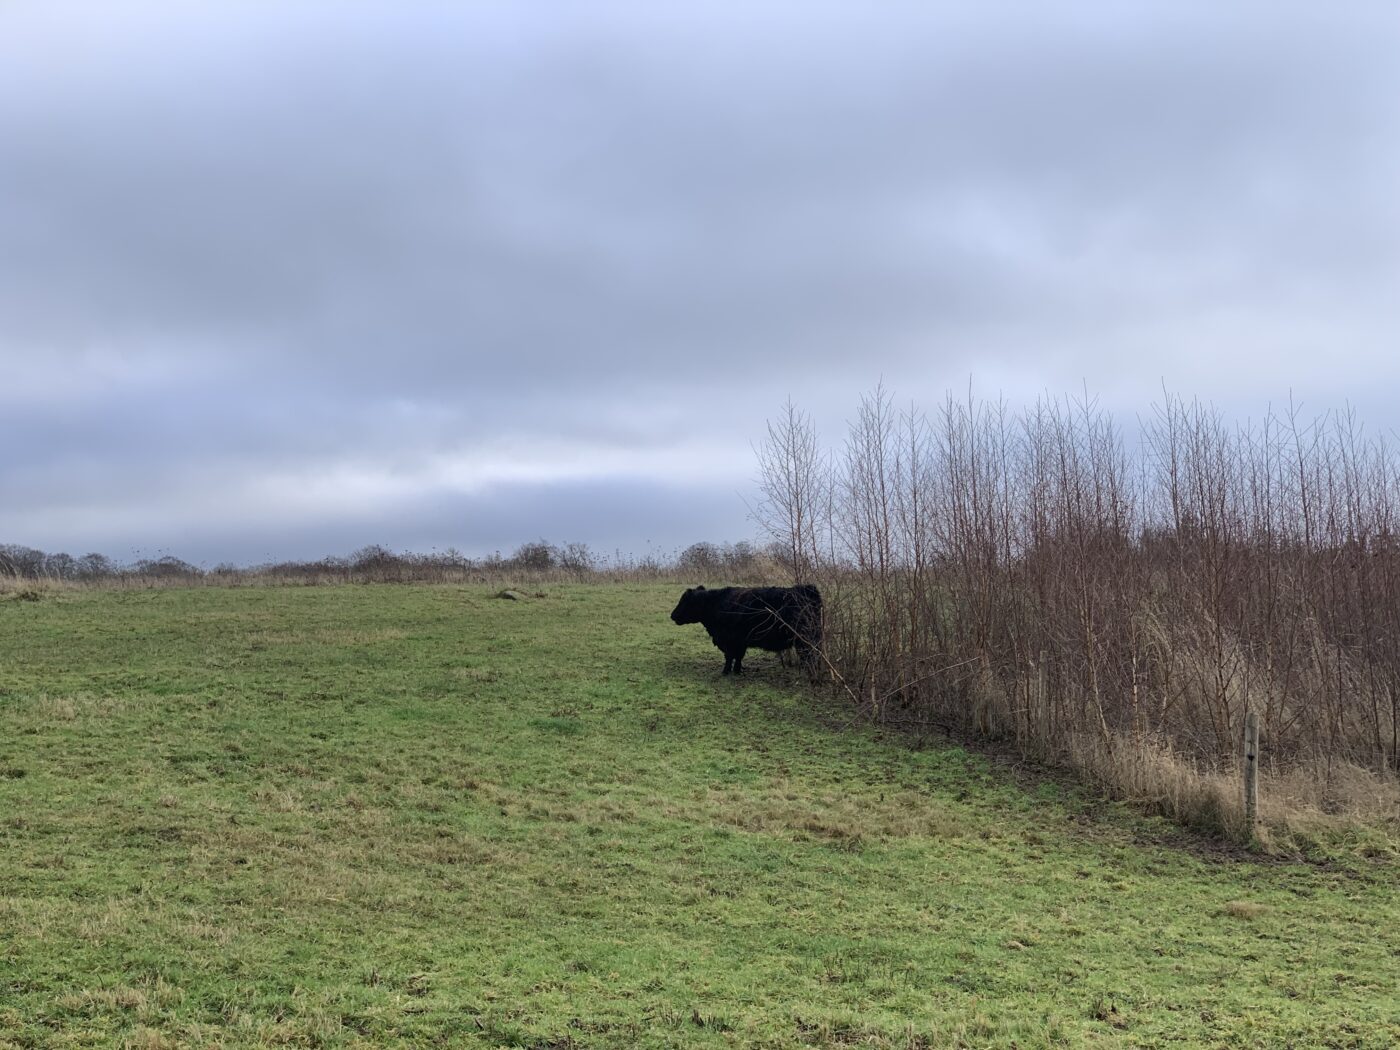 En tyrekalv står med bagdelen i læ på en vindblæst mark.